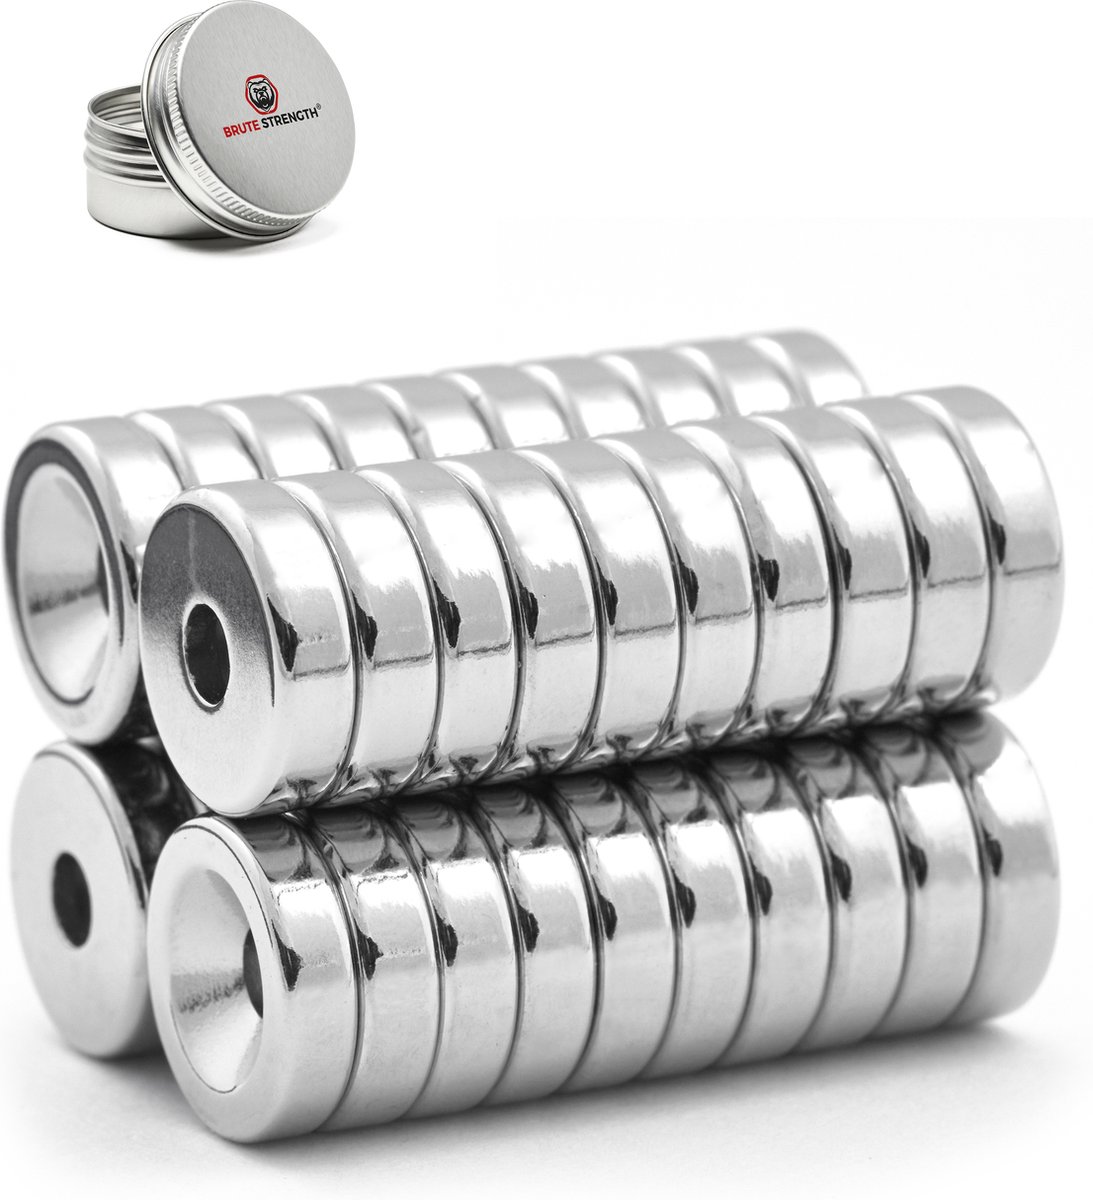 Brute Strength - Super sterke ring magneten - Rond - 15 x 4 mm met 4 mm gat - 40 Stuks - Neodymium magneet sterk